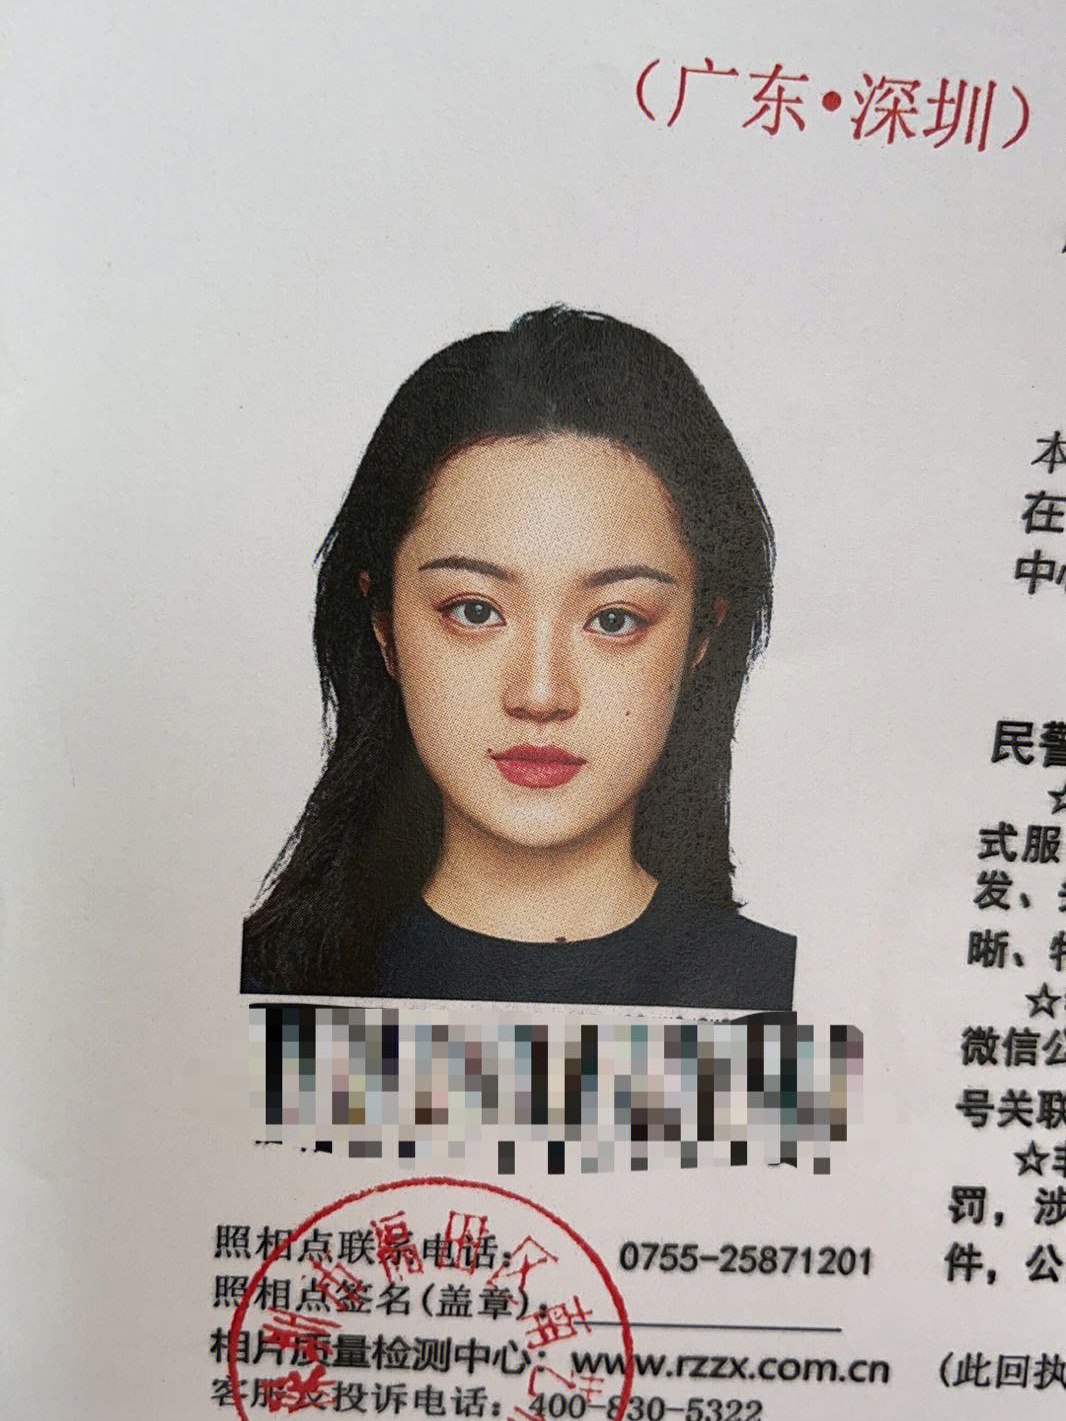 深圳地铁站自助证件照图片